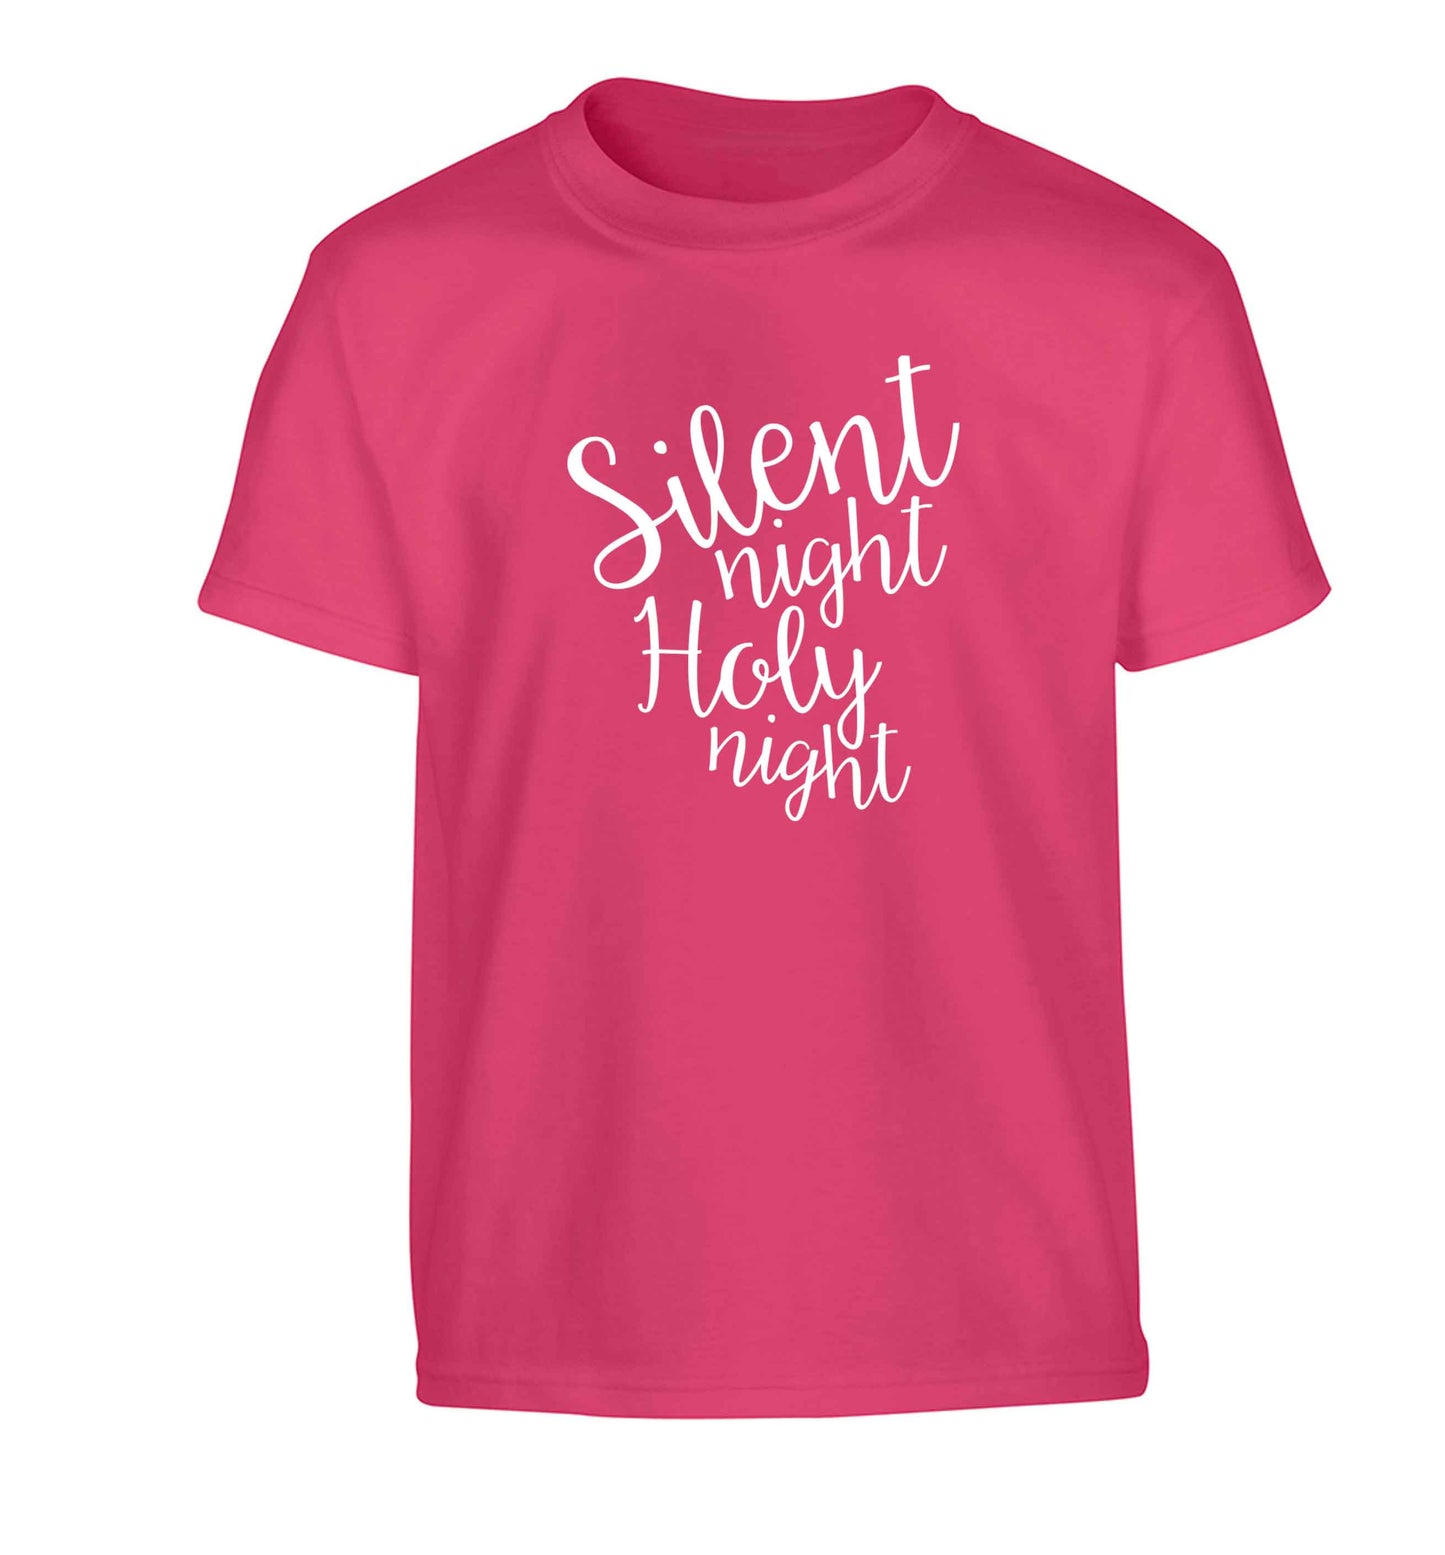 Silent night holy night Children's pink Tshirt 12-13 Years